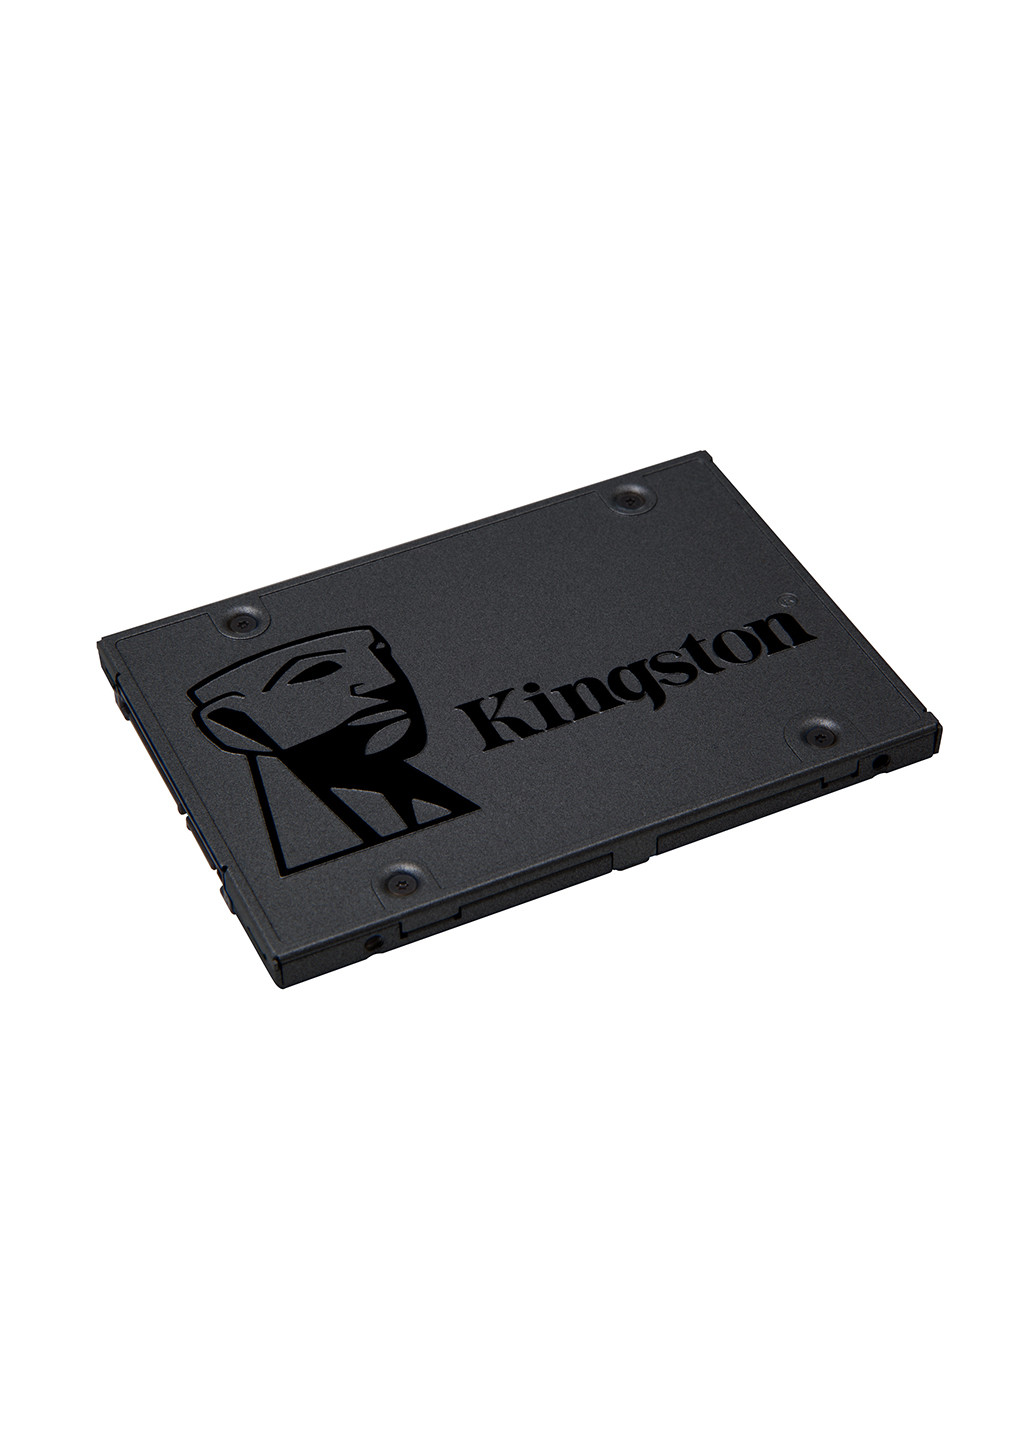 Внутренний SSD A400 480GB 2.5" SATAIII TLC (SA400S37/480G) Kingston Внутренний SSD Kingston A400 480GB 2.5" SATAIII TLC (SA400S37/480G) комбинированные